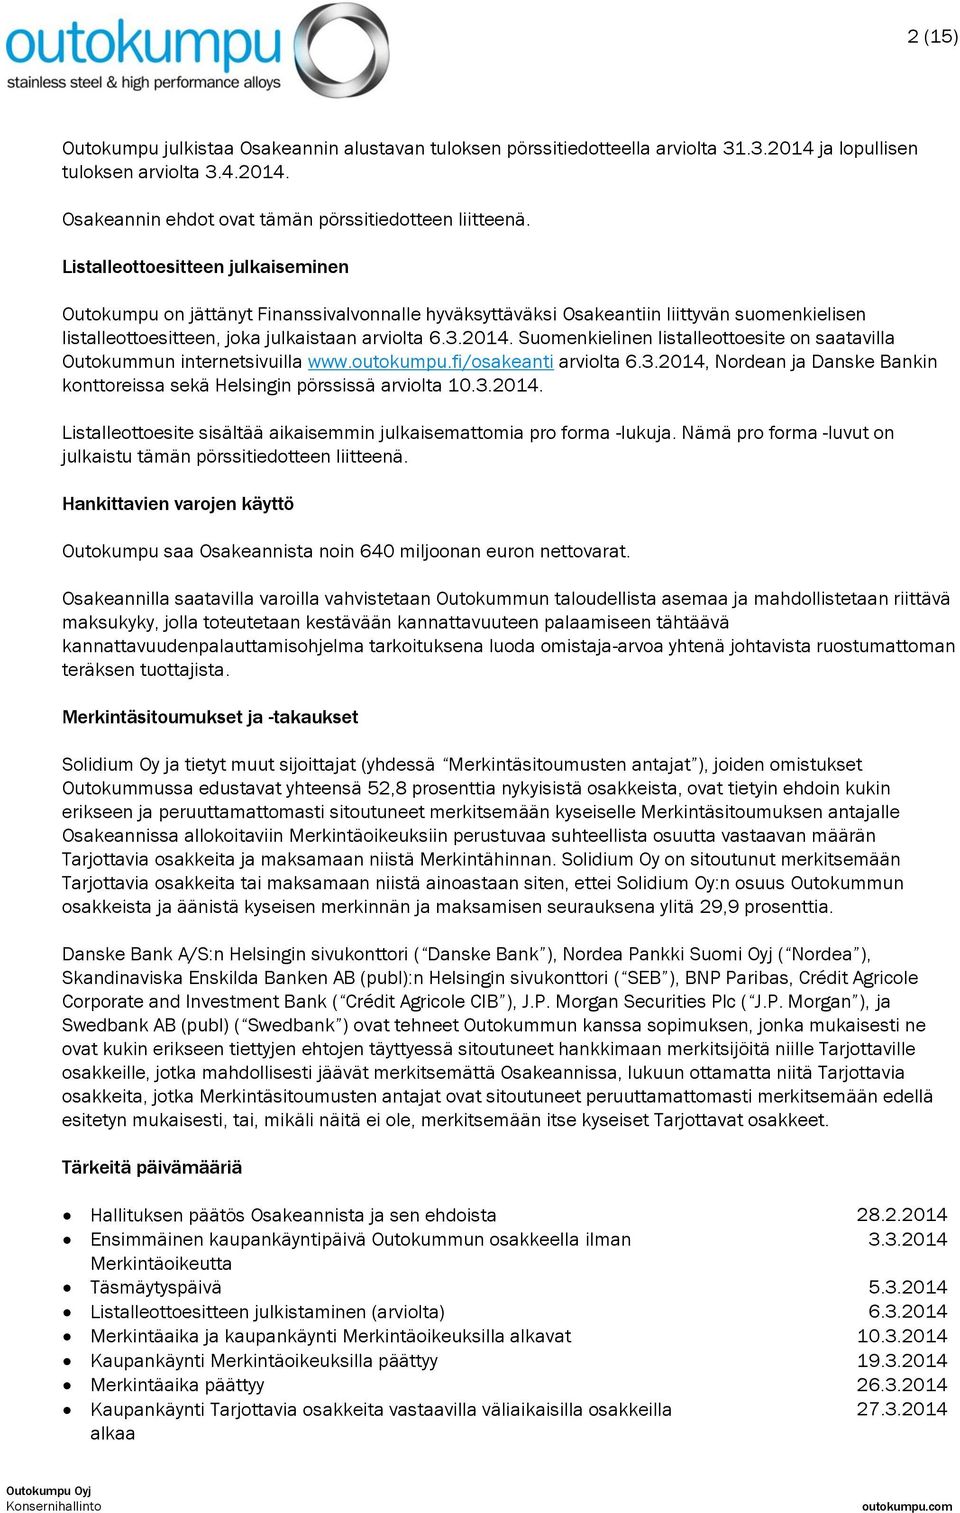 Suomenkielinen listalleottoesite on saatavilla Outokummun internetsivuilla www.outokumpu.fi/osakeanti arviolta 6.3.2014, Nordean ja Danske Bankin konttoreissa sekä Helsingin pörssissä arviolta 10.3.2014. Listalleottoesite sisältää aikaisemmin julkaisemattomia pro -lukuja.